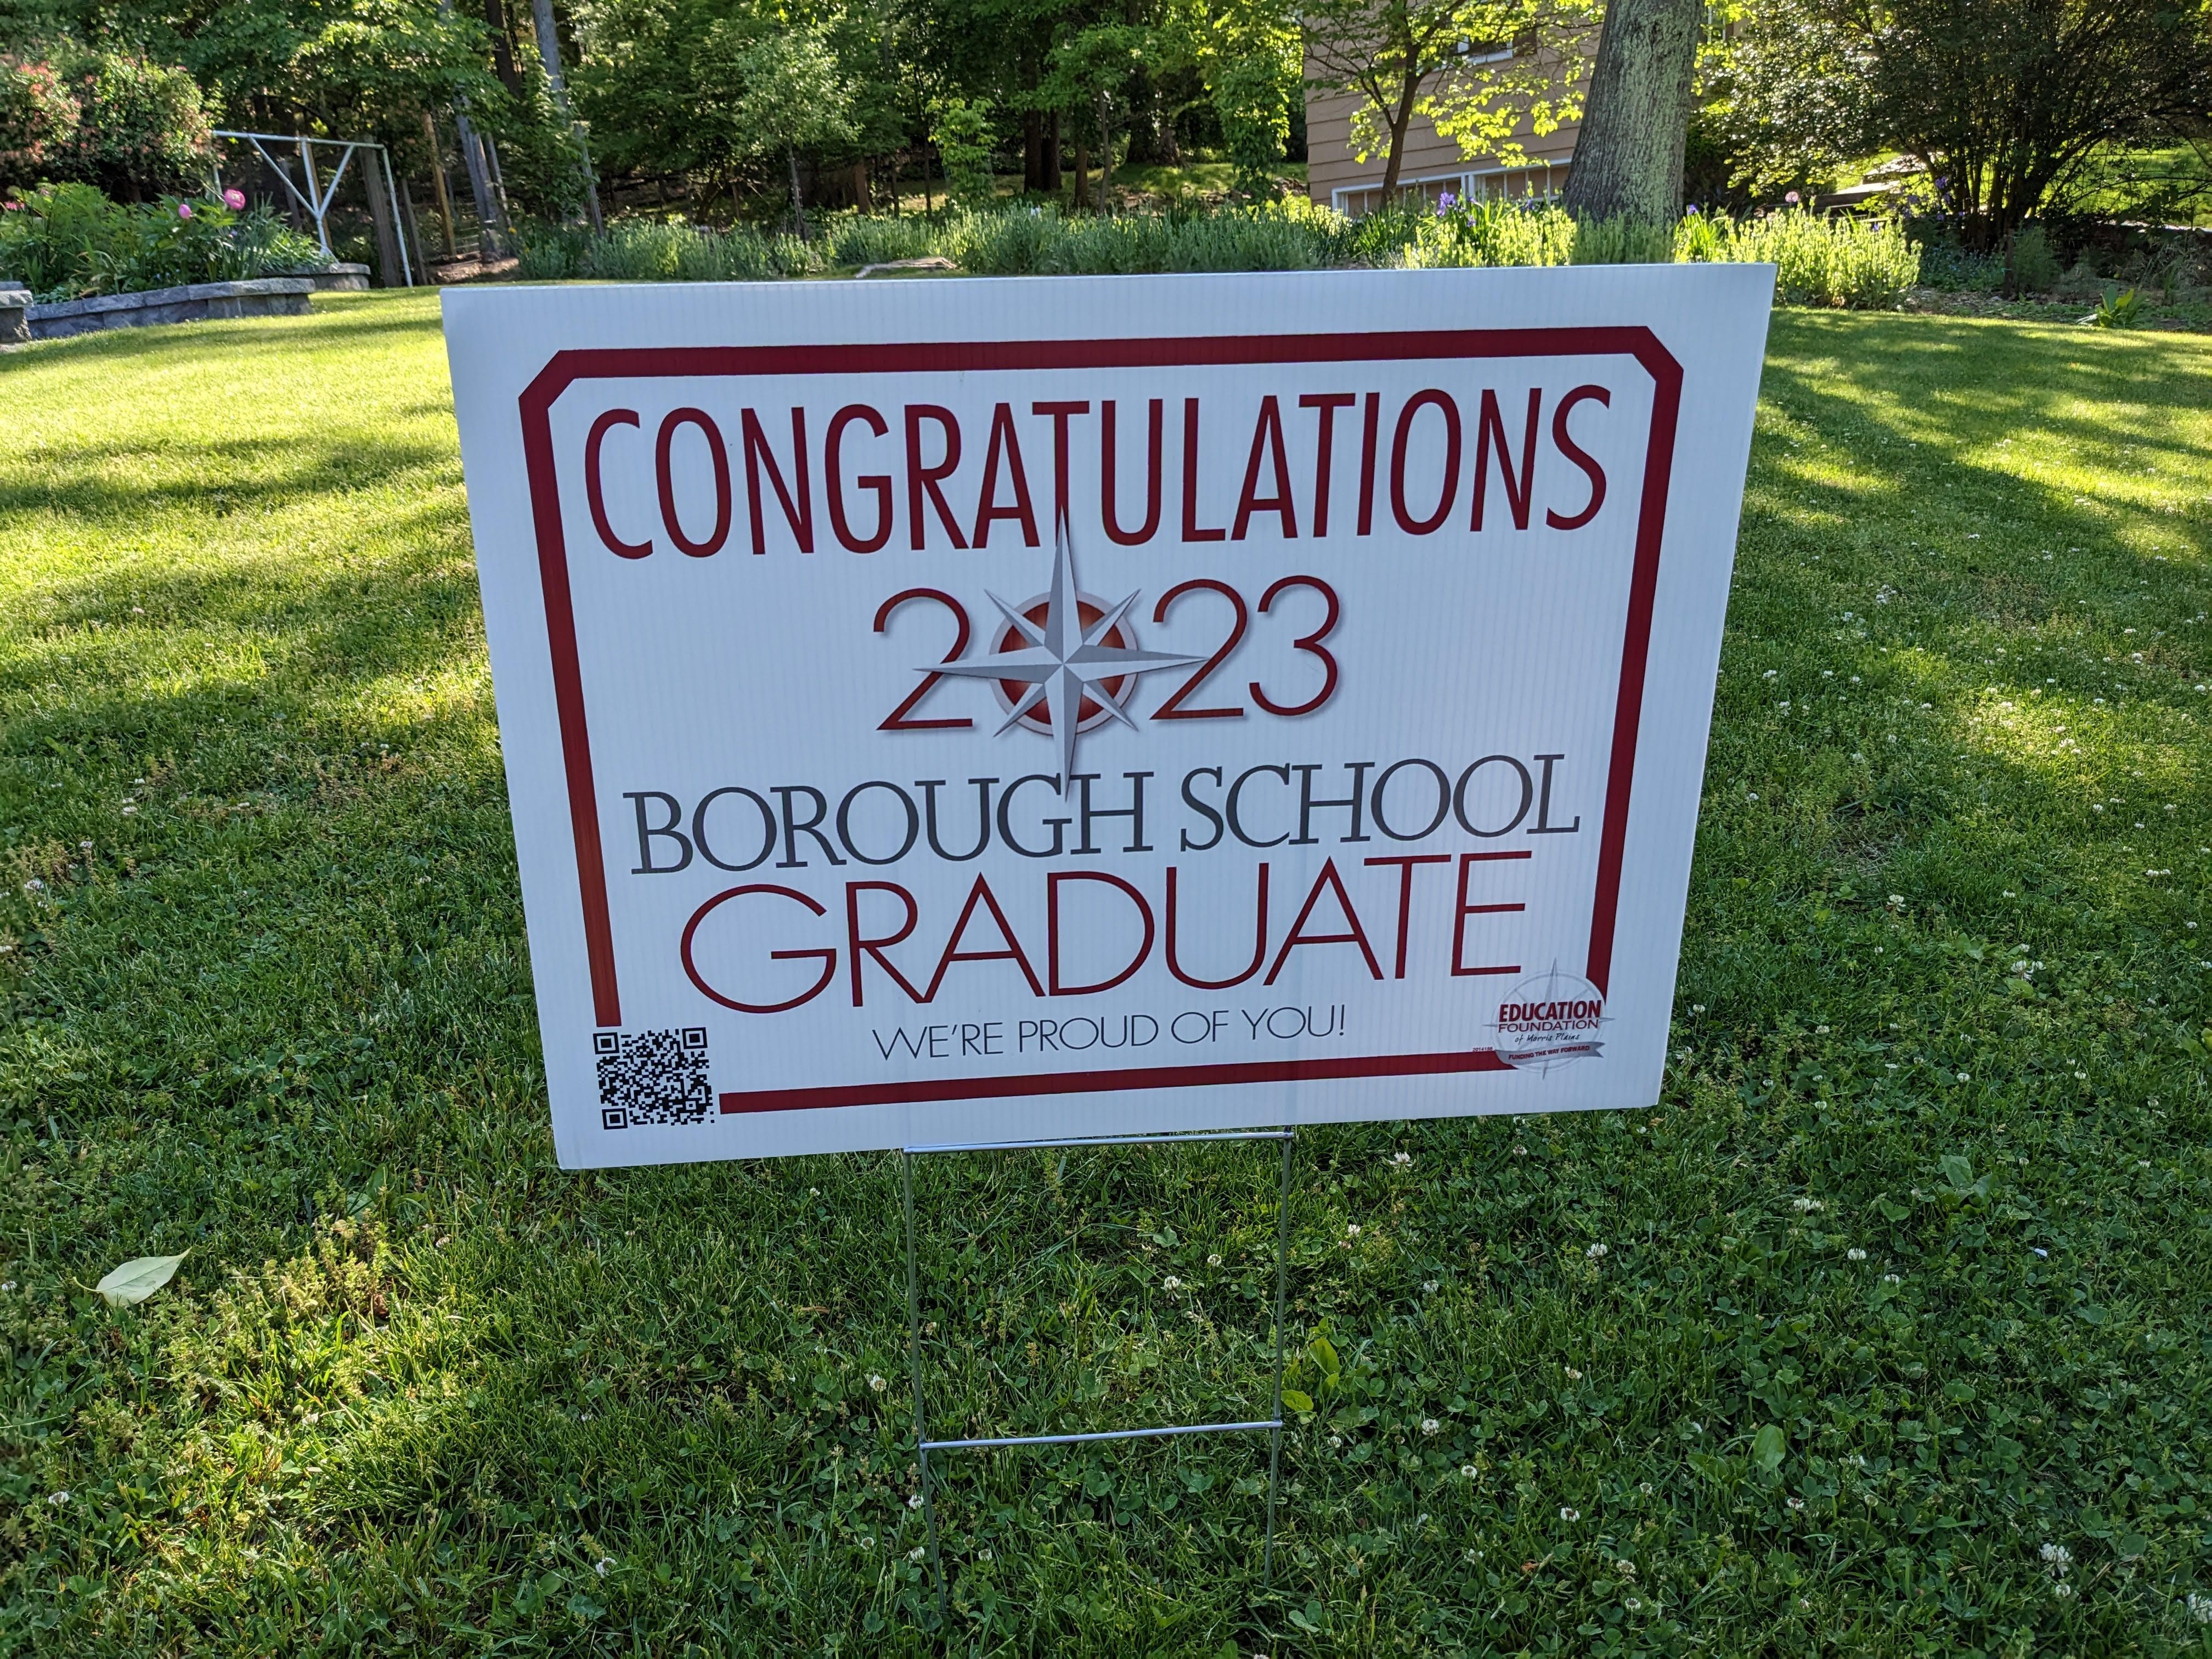 Congrats 2023 Borough School Graduates!